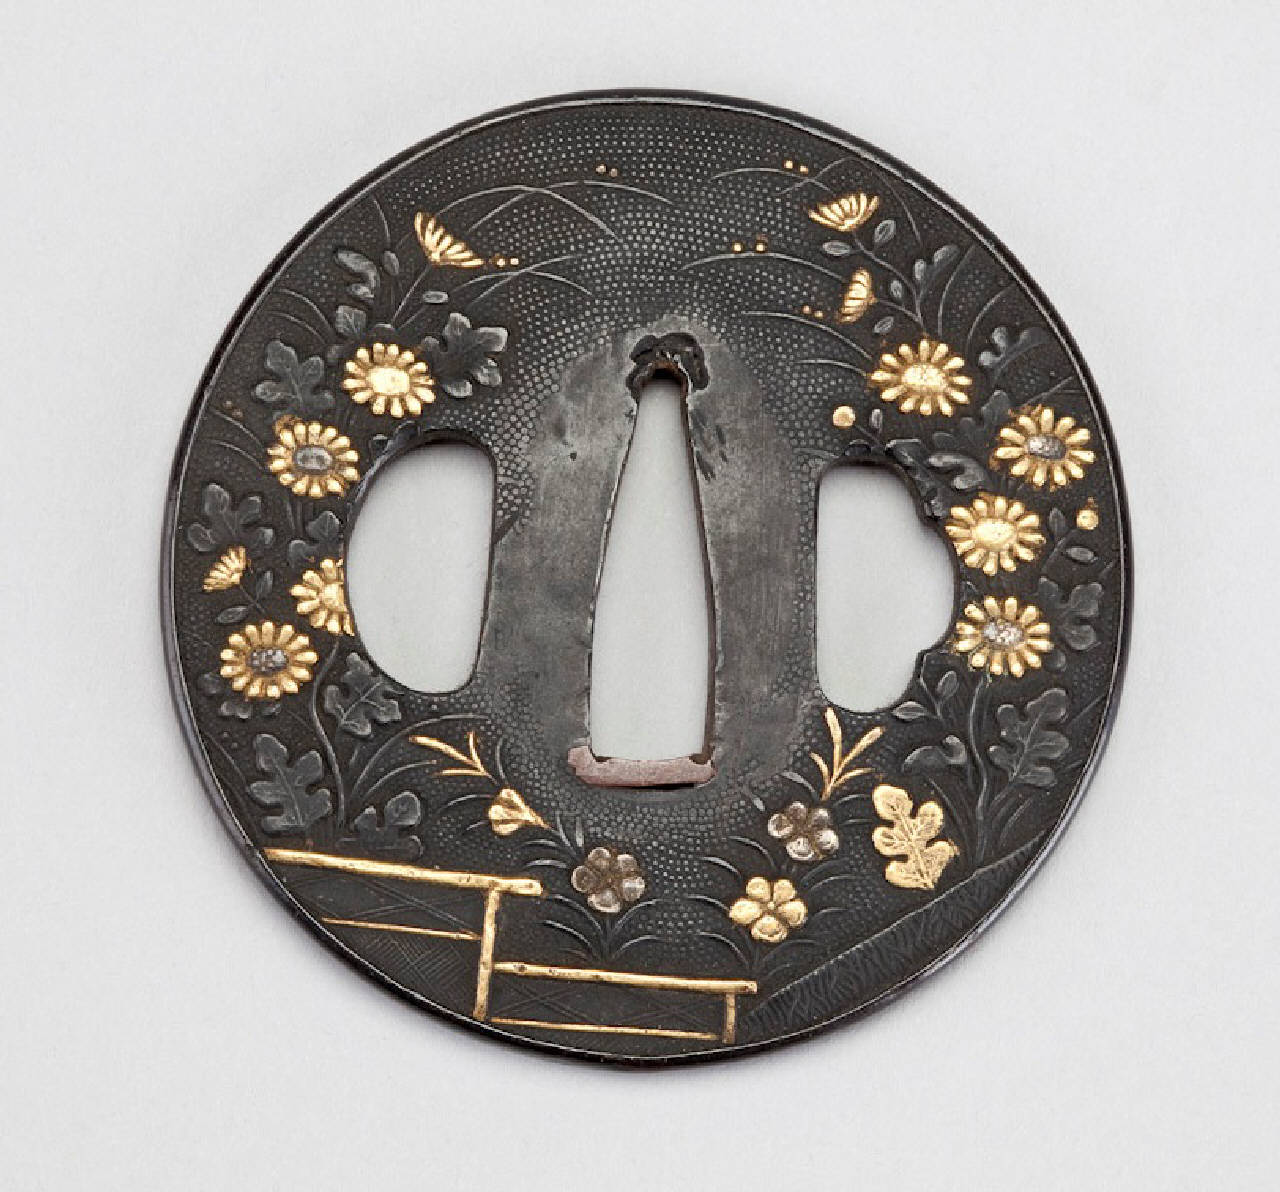 motivi decorativi floreali (elsa) - manifattura giapponese (secc. XVIII/ XIX)